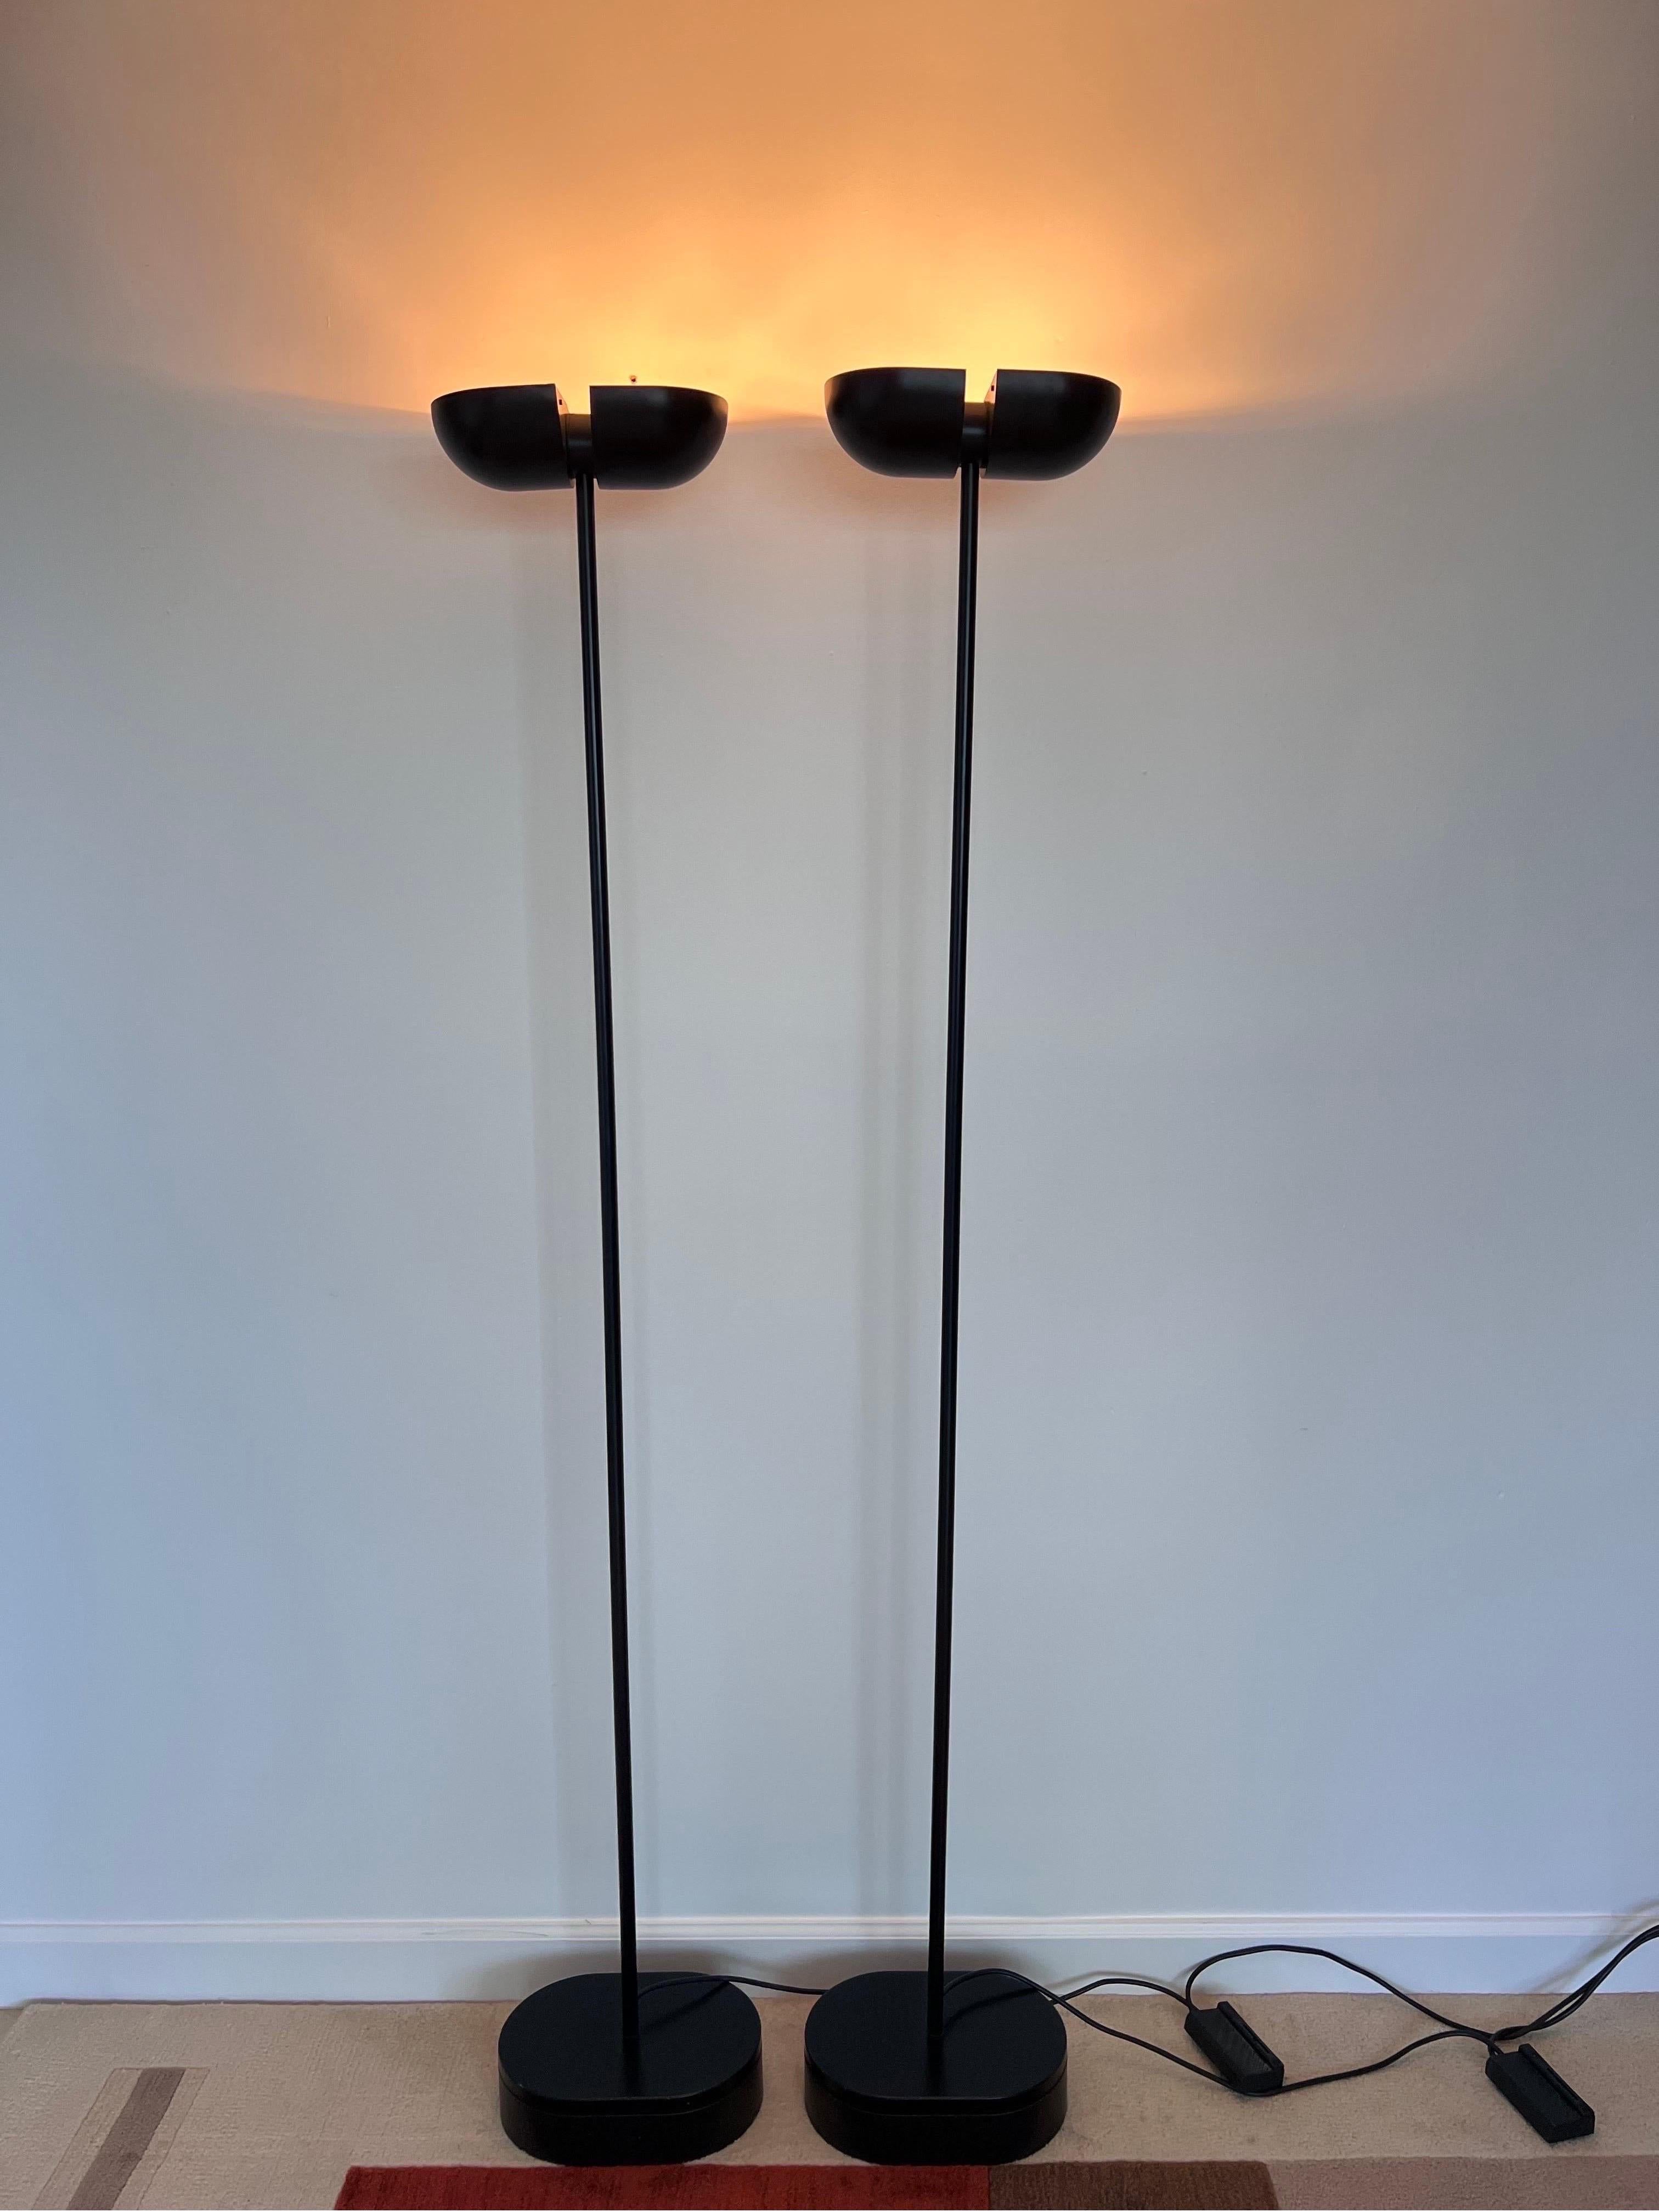 Postmoderne schwarze Torchiere-Stehlampen mit verstellbaren Köpfen, 1980er Jahre, ein Paar (20. Jahrhundert)